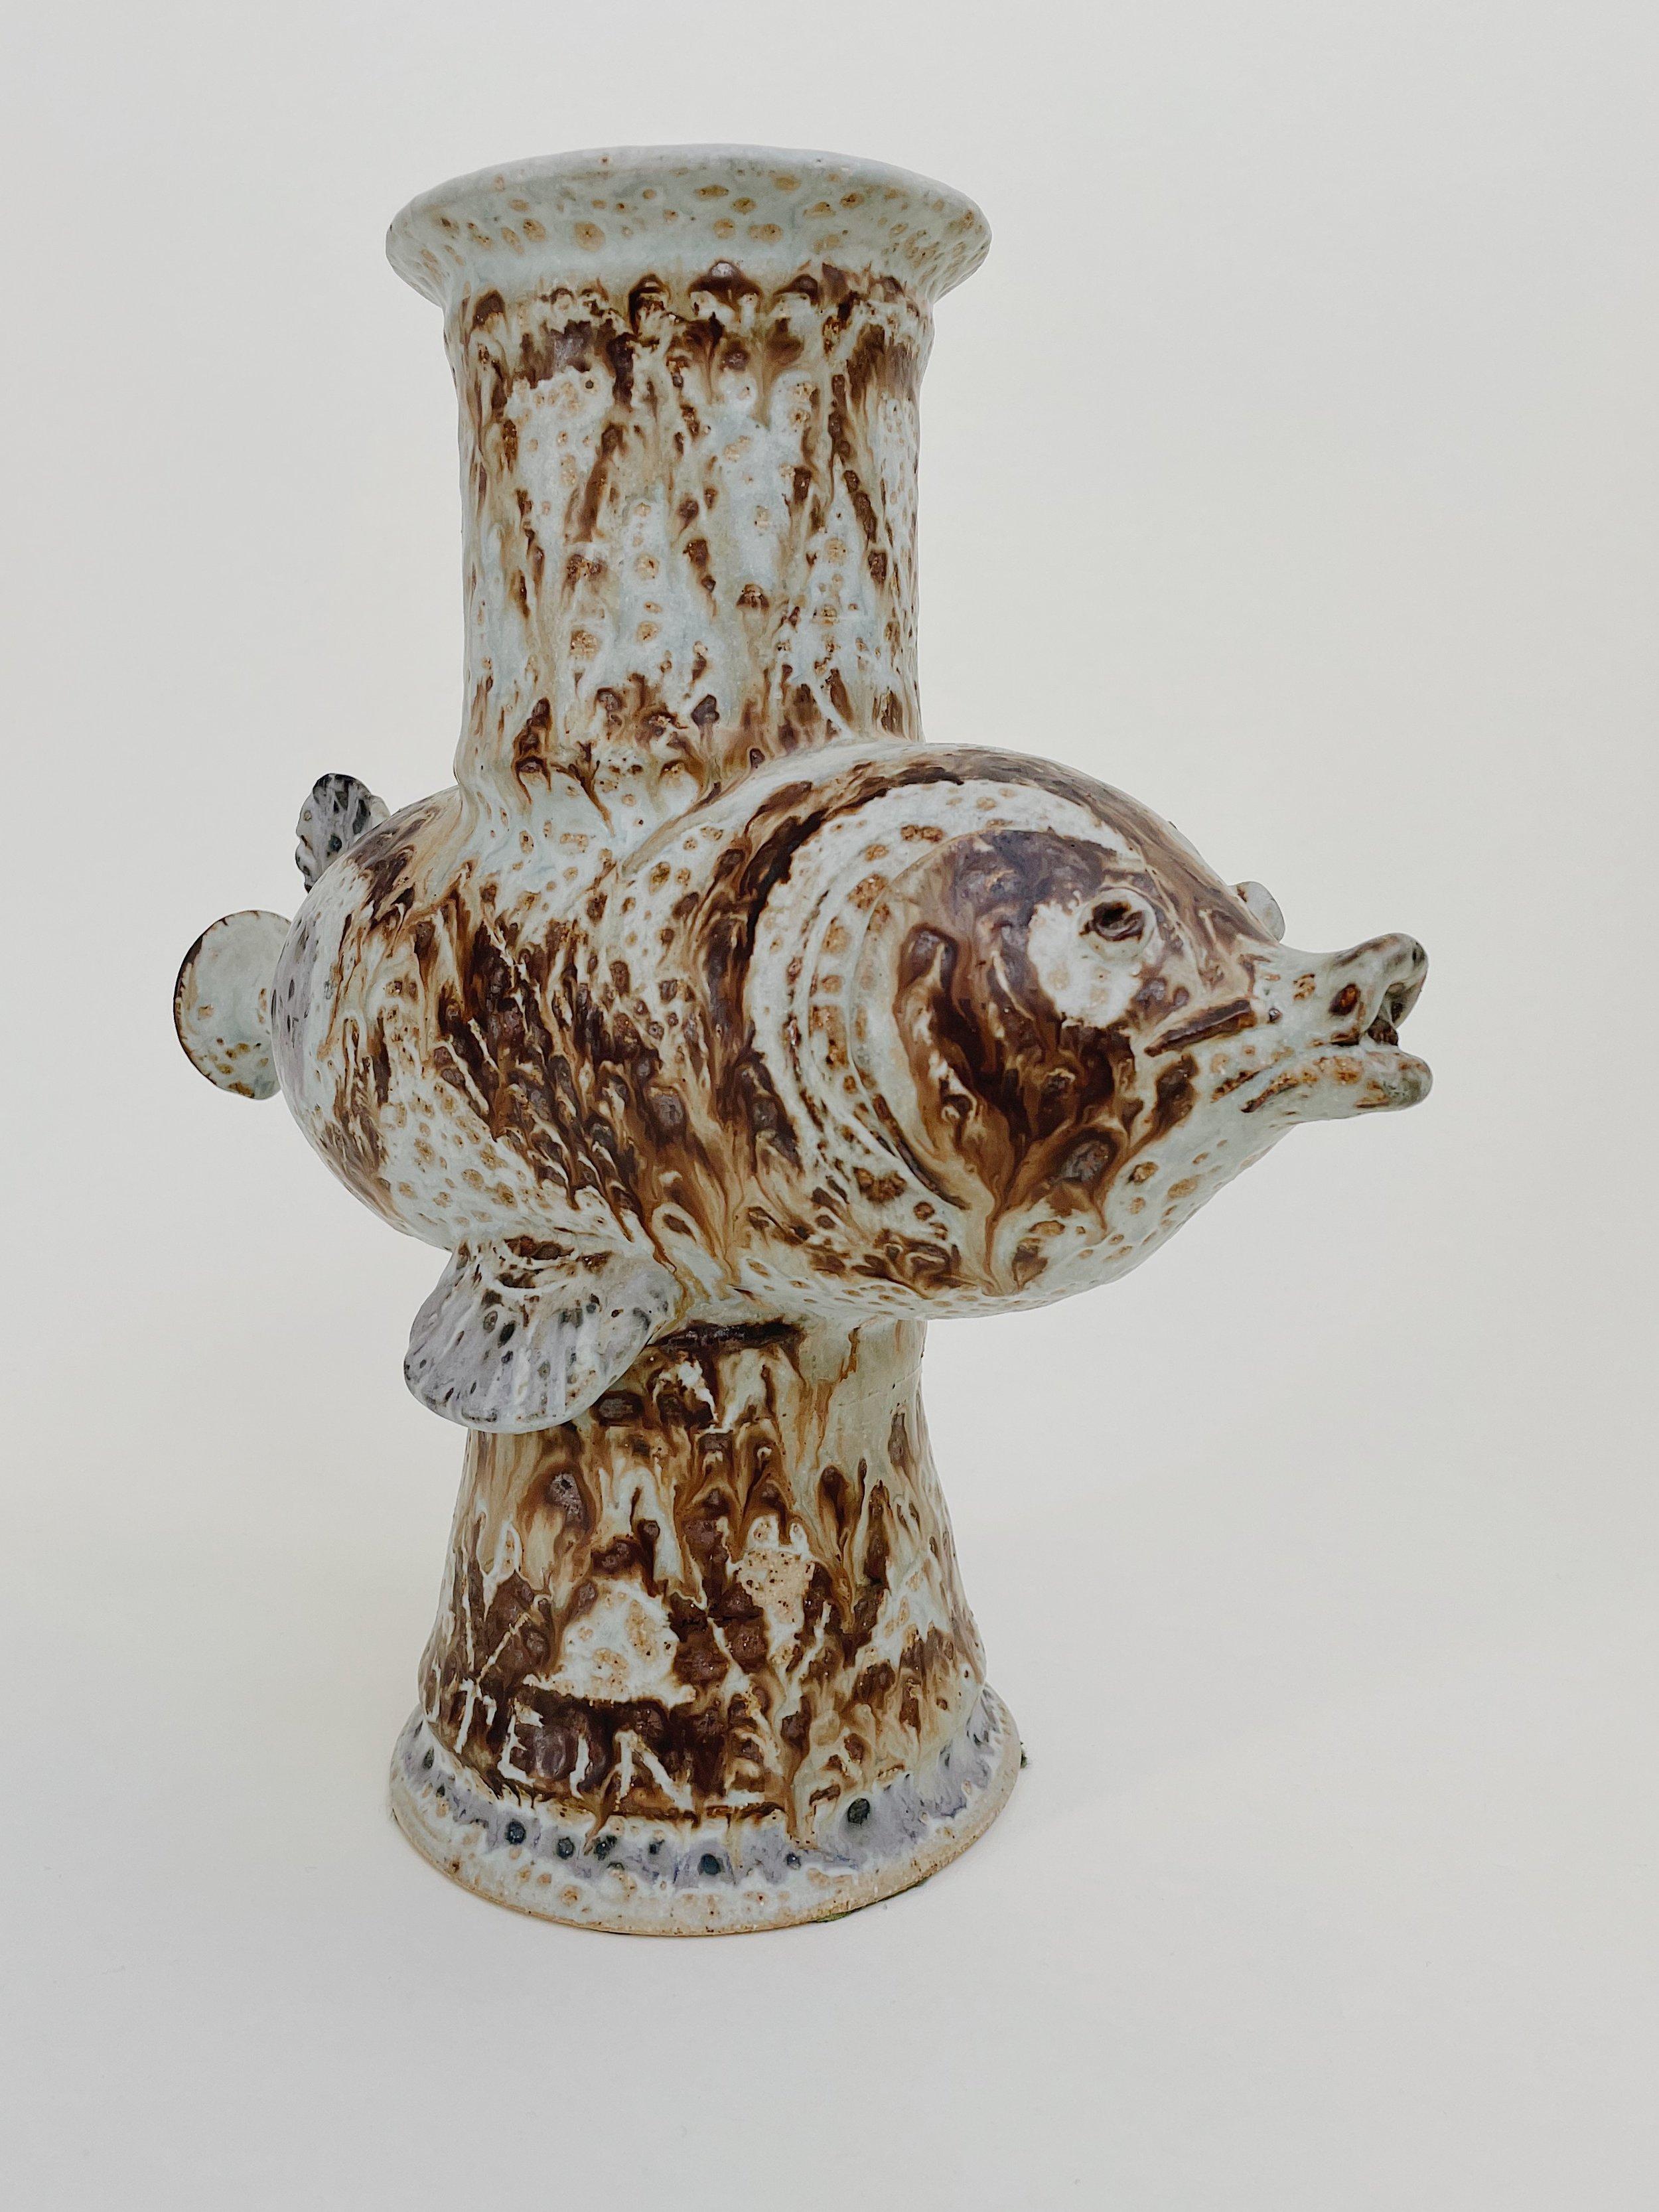 Laszlo Steiner

Vase à poisson unique fabriqué à la main par Laszlo Steiner. Argile de couleur os sculptée et émaillée dans des tons de brun, caramel, lavande et parchemin. Une pièce sculpturale étonnante, signée et datée 